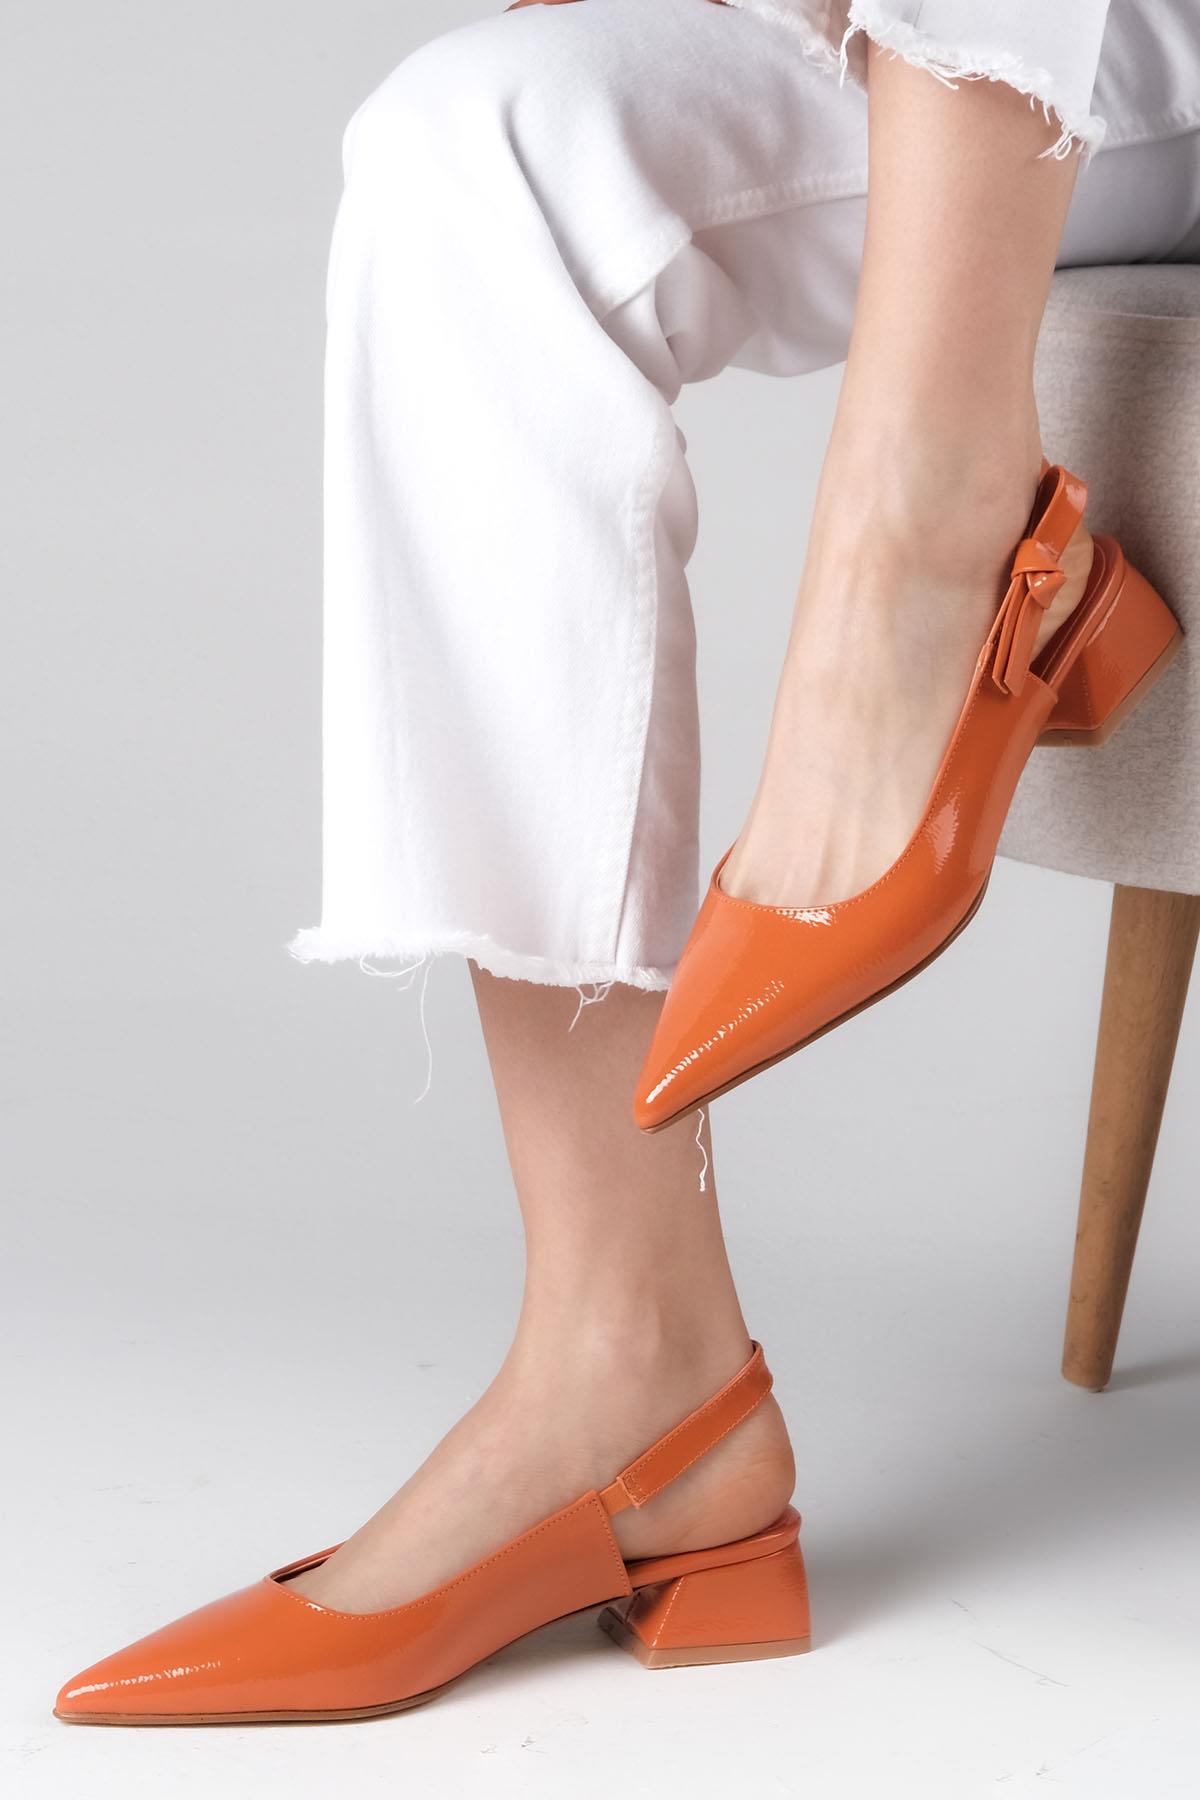 Mio Gusto Turuncu Renk Arkası Açık Kısa Topuklu Ayakkabı